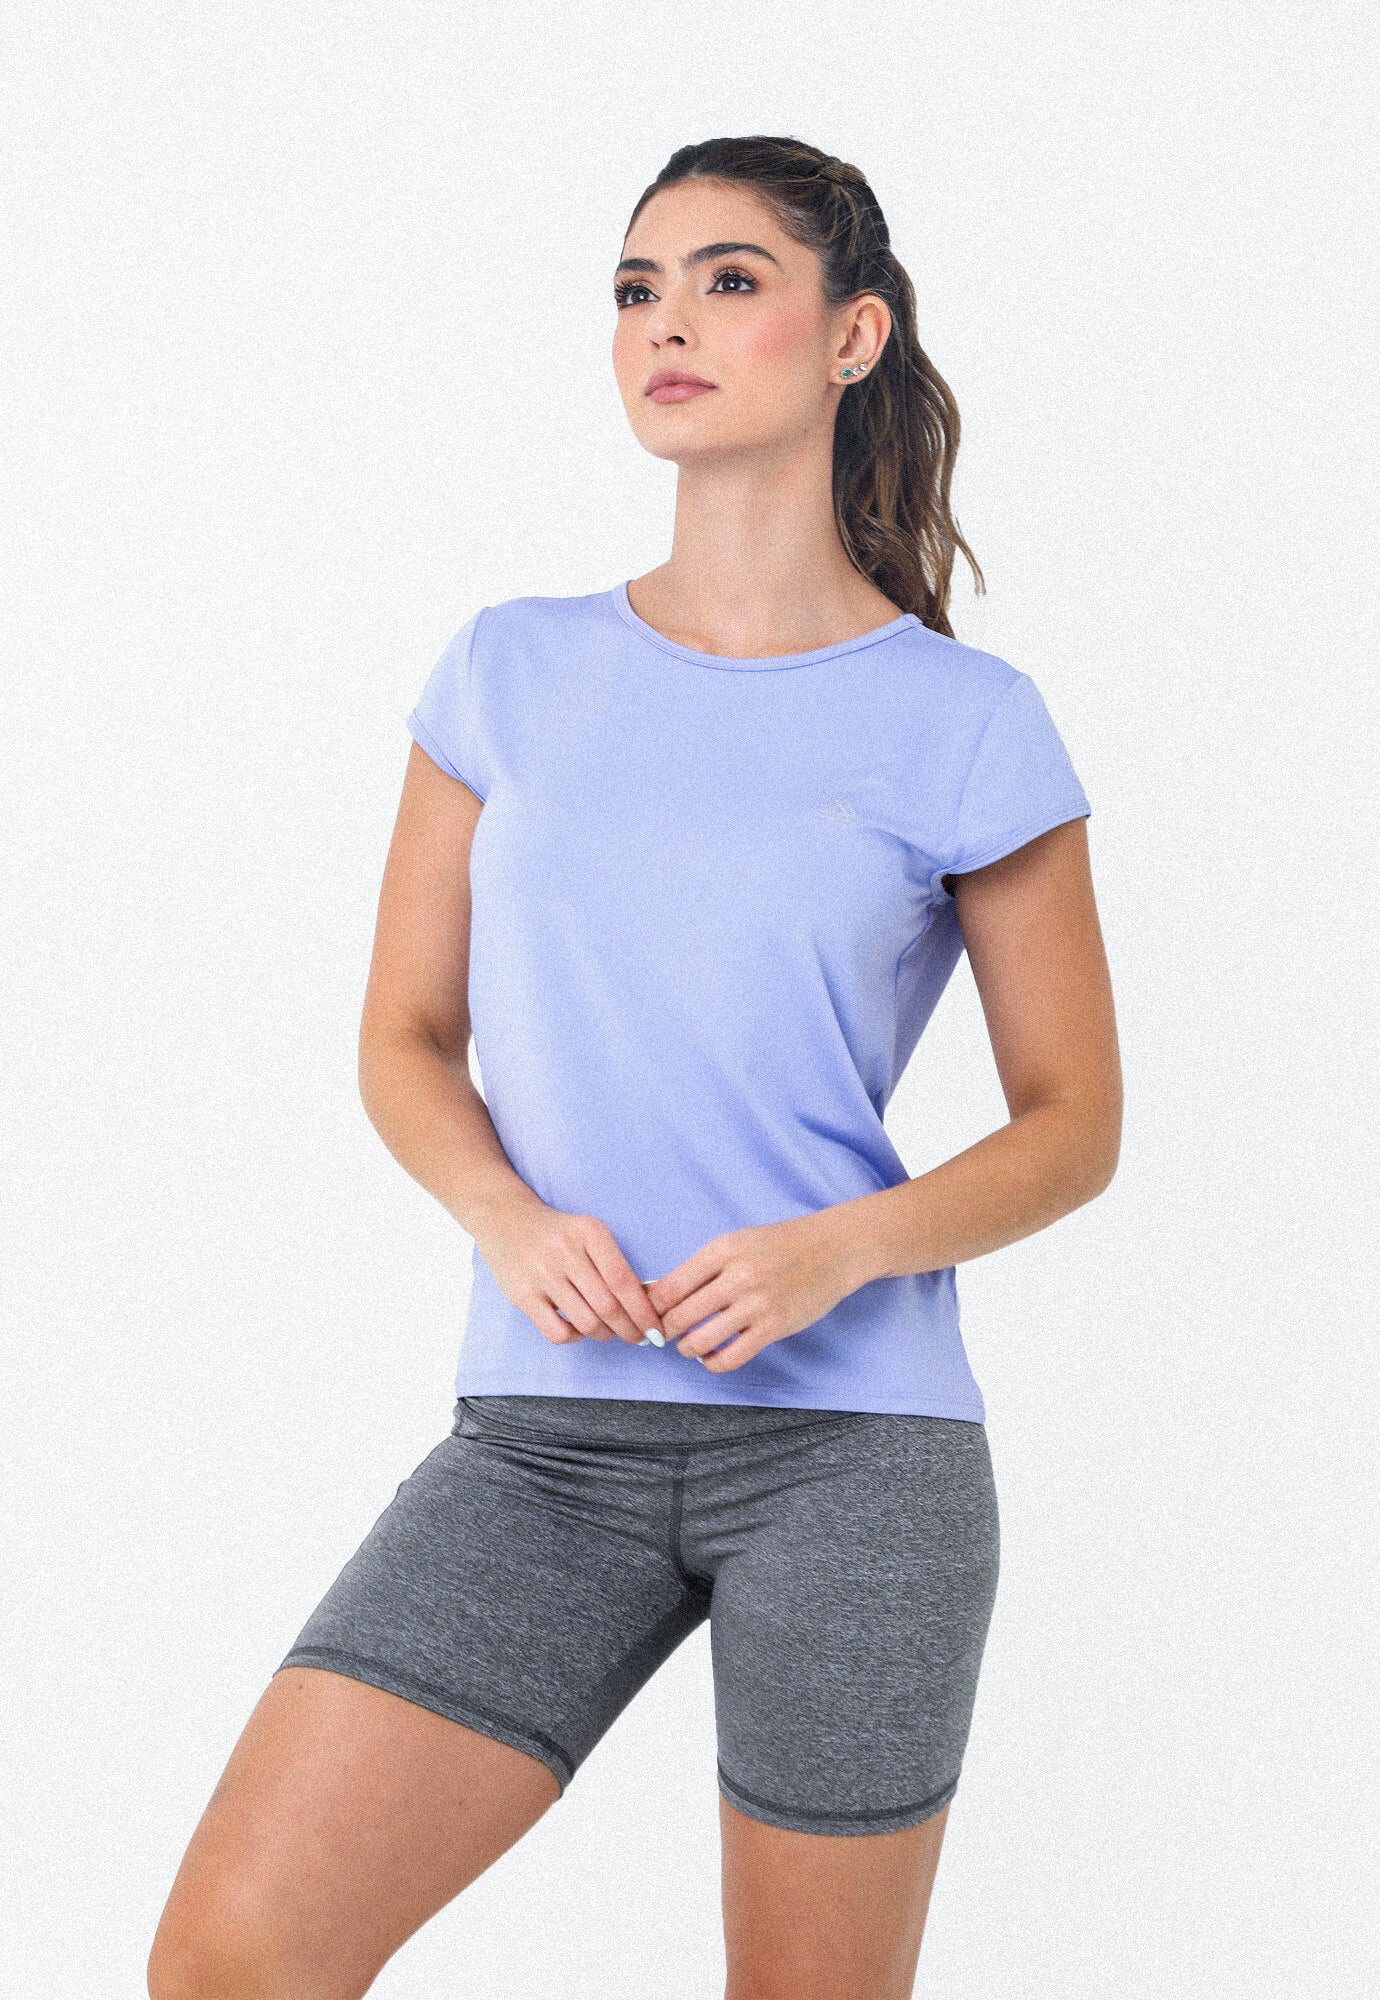 Camiseta deportiva lila para mujer